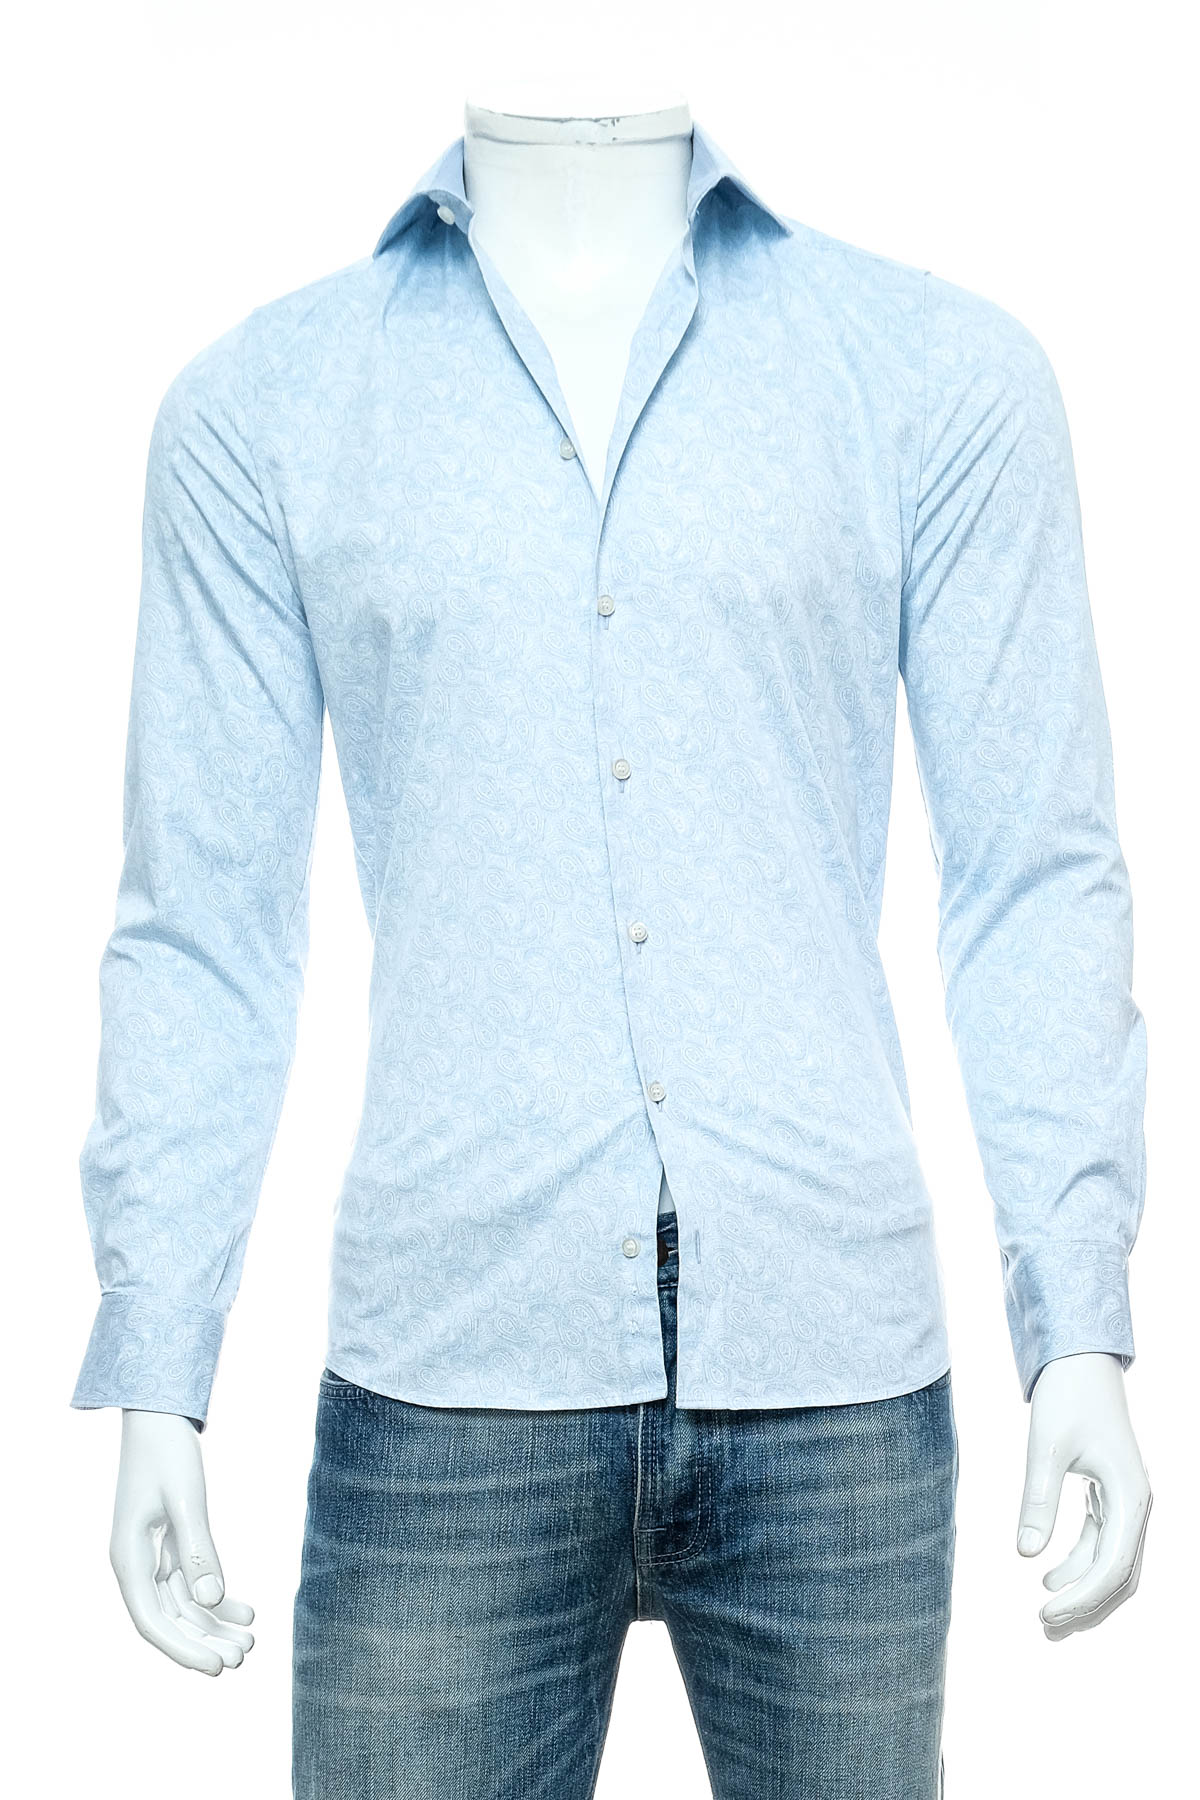 Ανδρικό πουκάμισο - Olymp - 0